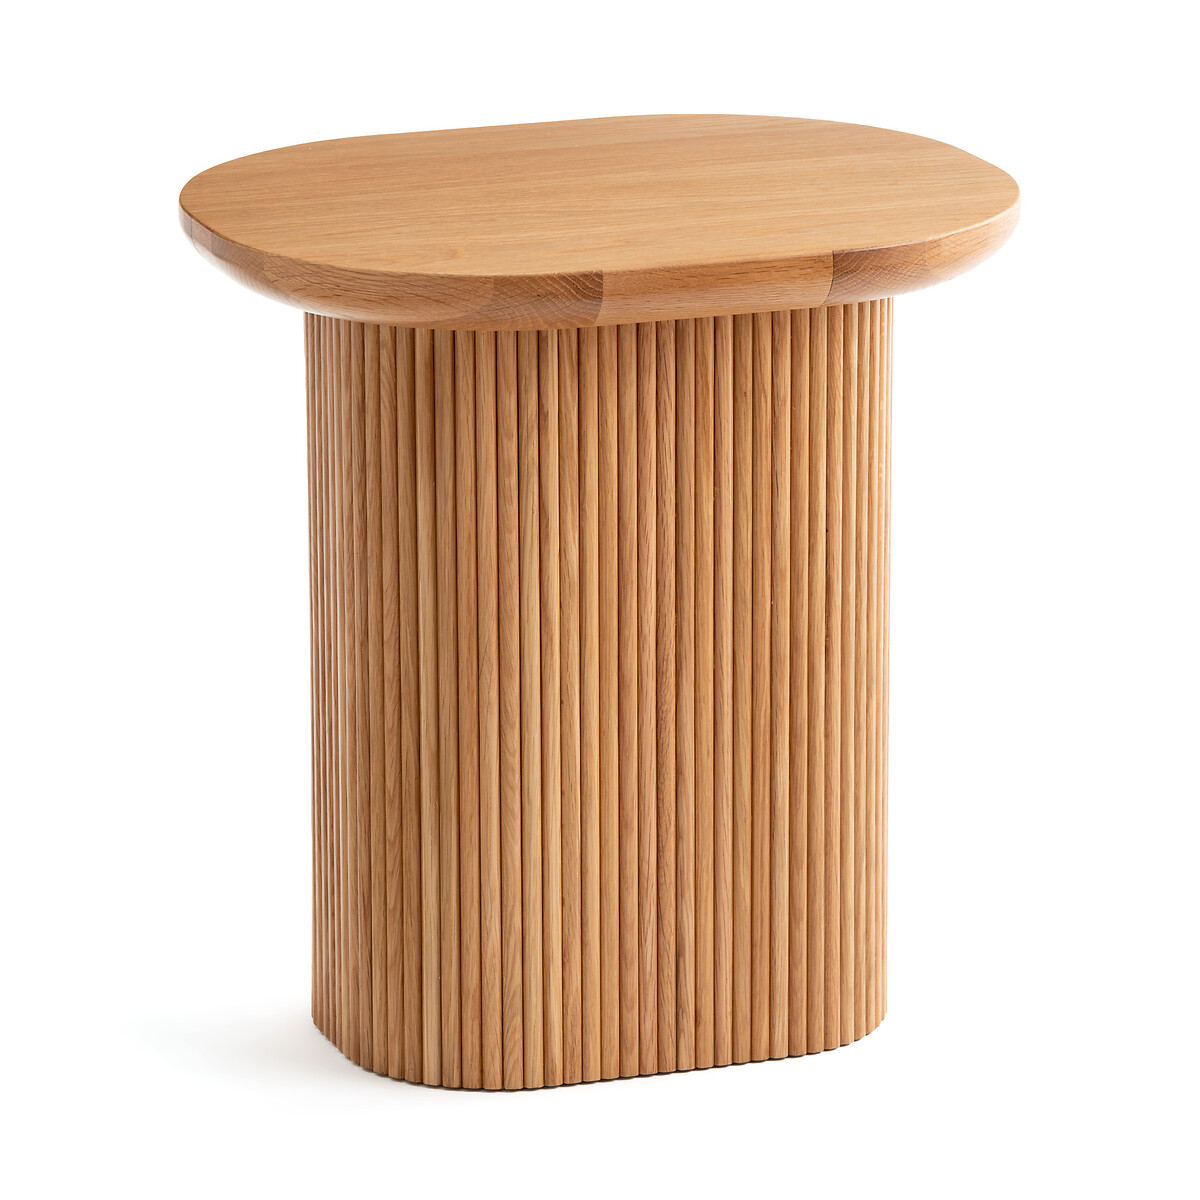 Стол журнальный из дуба Tamula единый размер каштановый стол журнальный из цементного волокна cannelli единый размер оранжевый